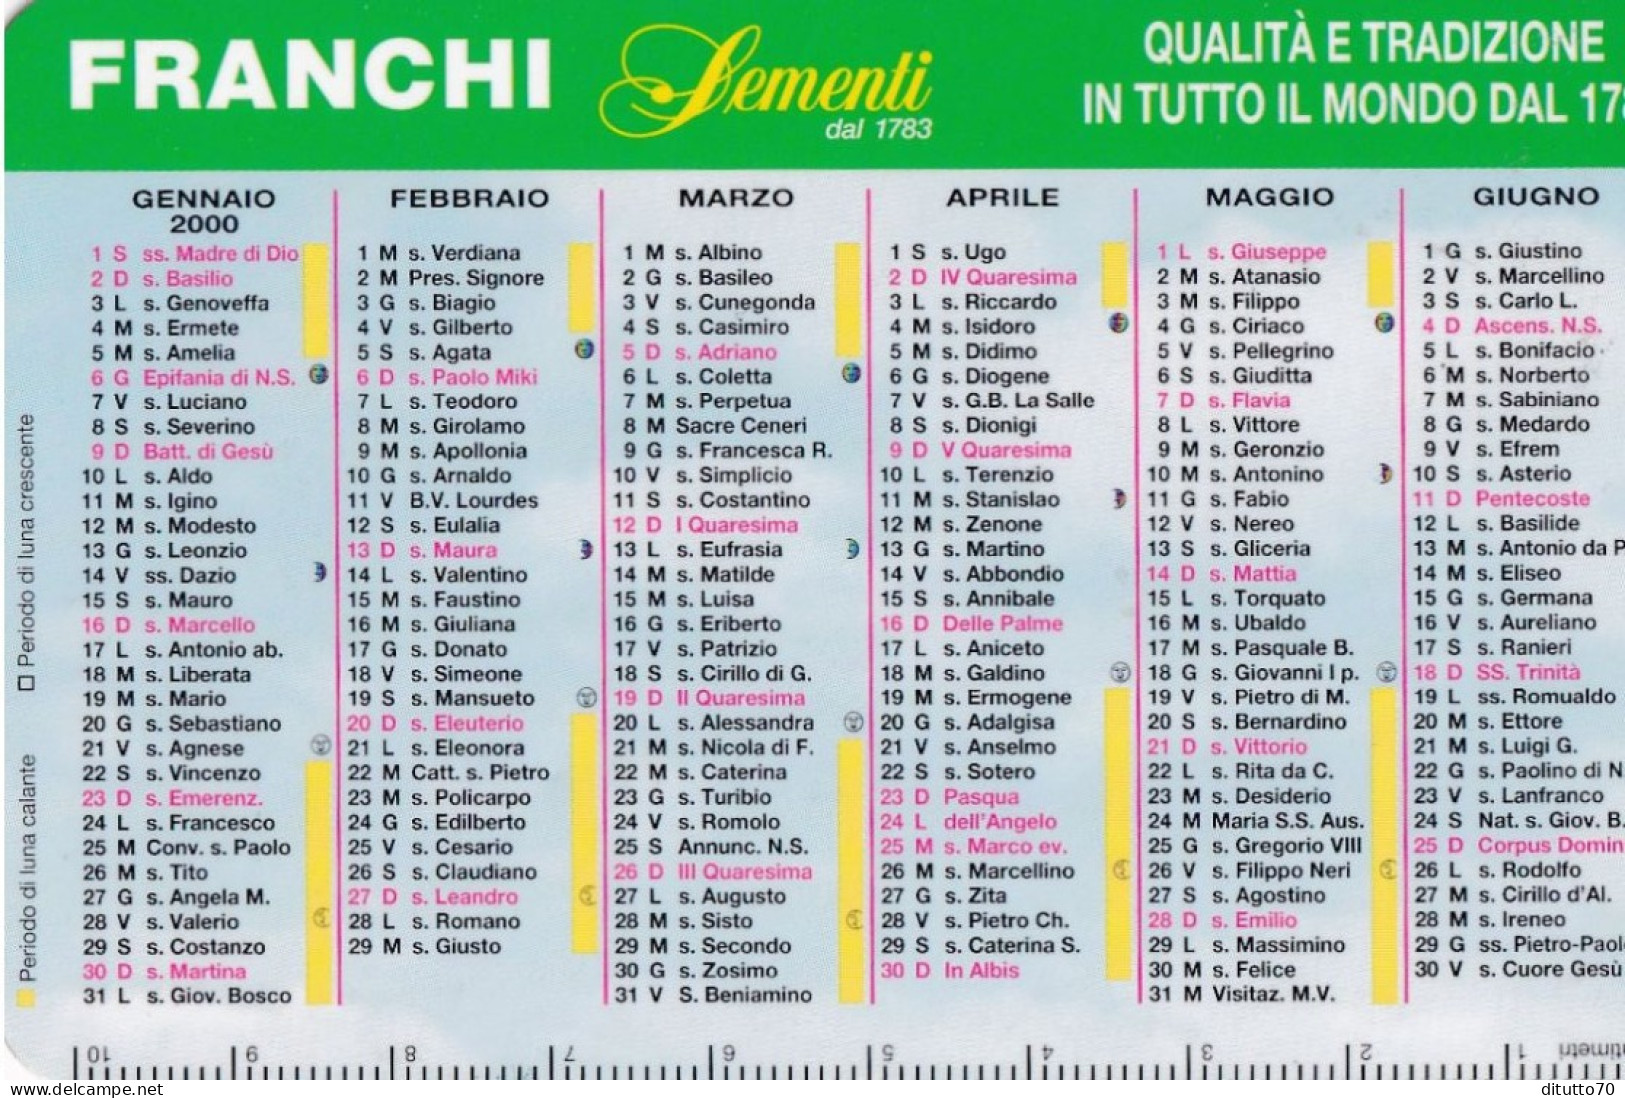 Calendarietto - Franchi - Sementi - Anno 2000 - Small : 1991-00